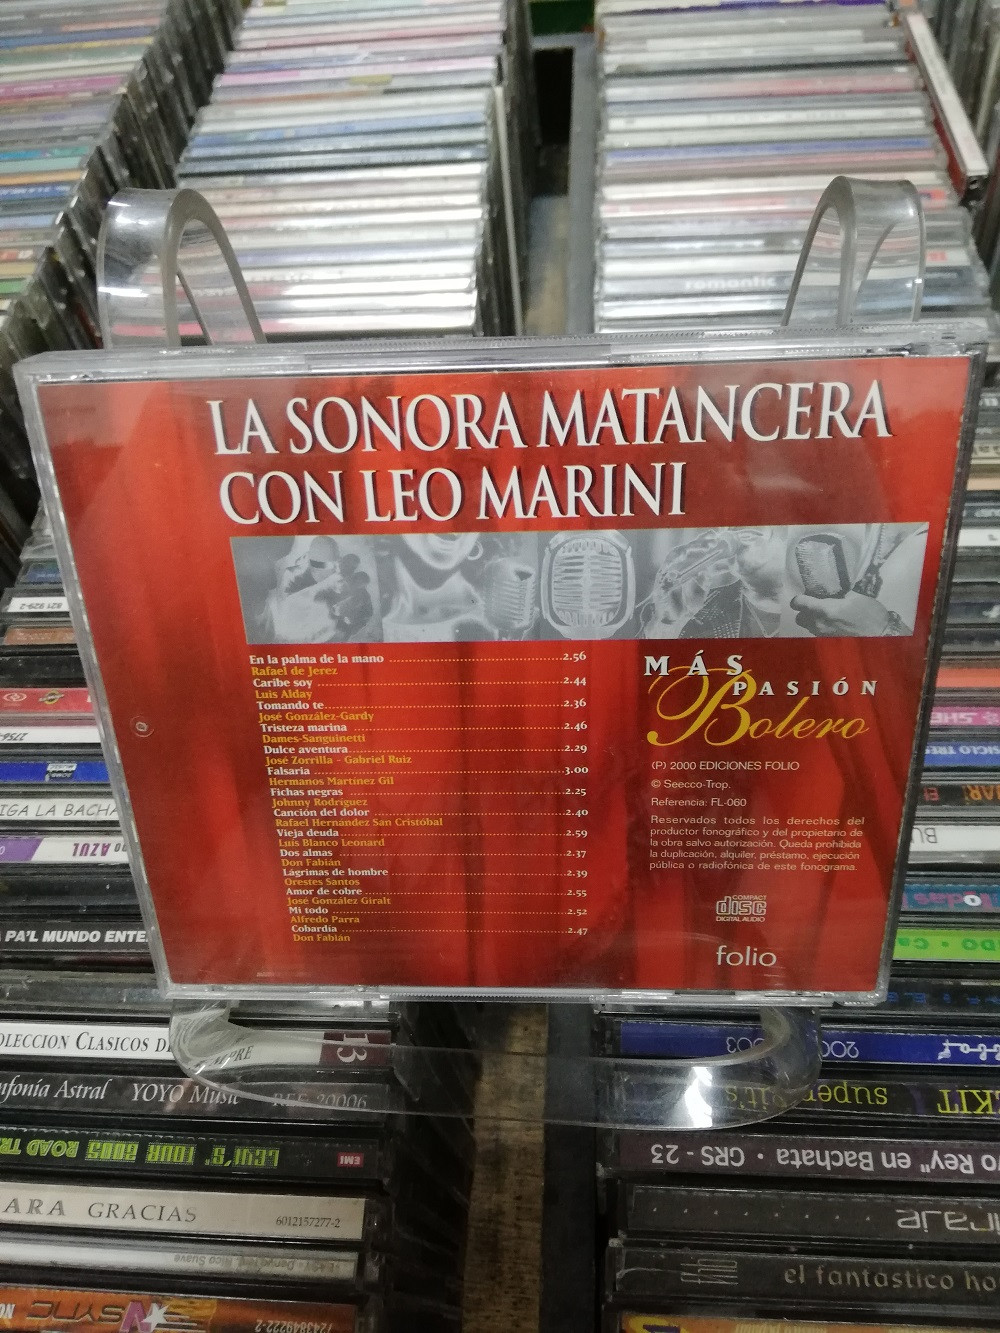 Imagen CD LA SONORA MATANCERA CON LEO MARINI - MAS PASIÓN MAS BOLERO 2